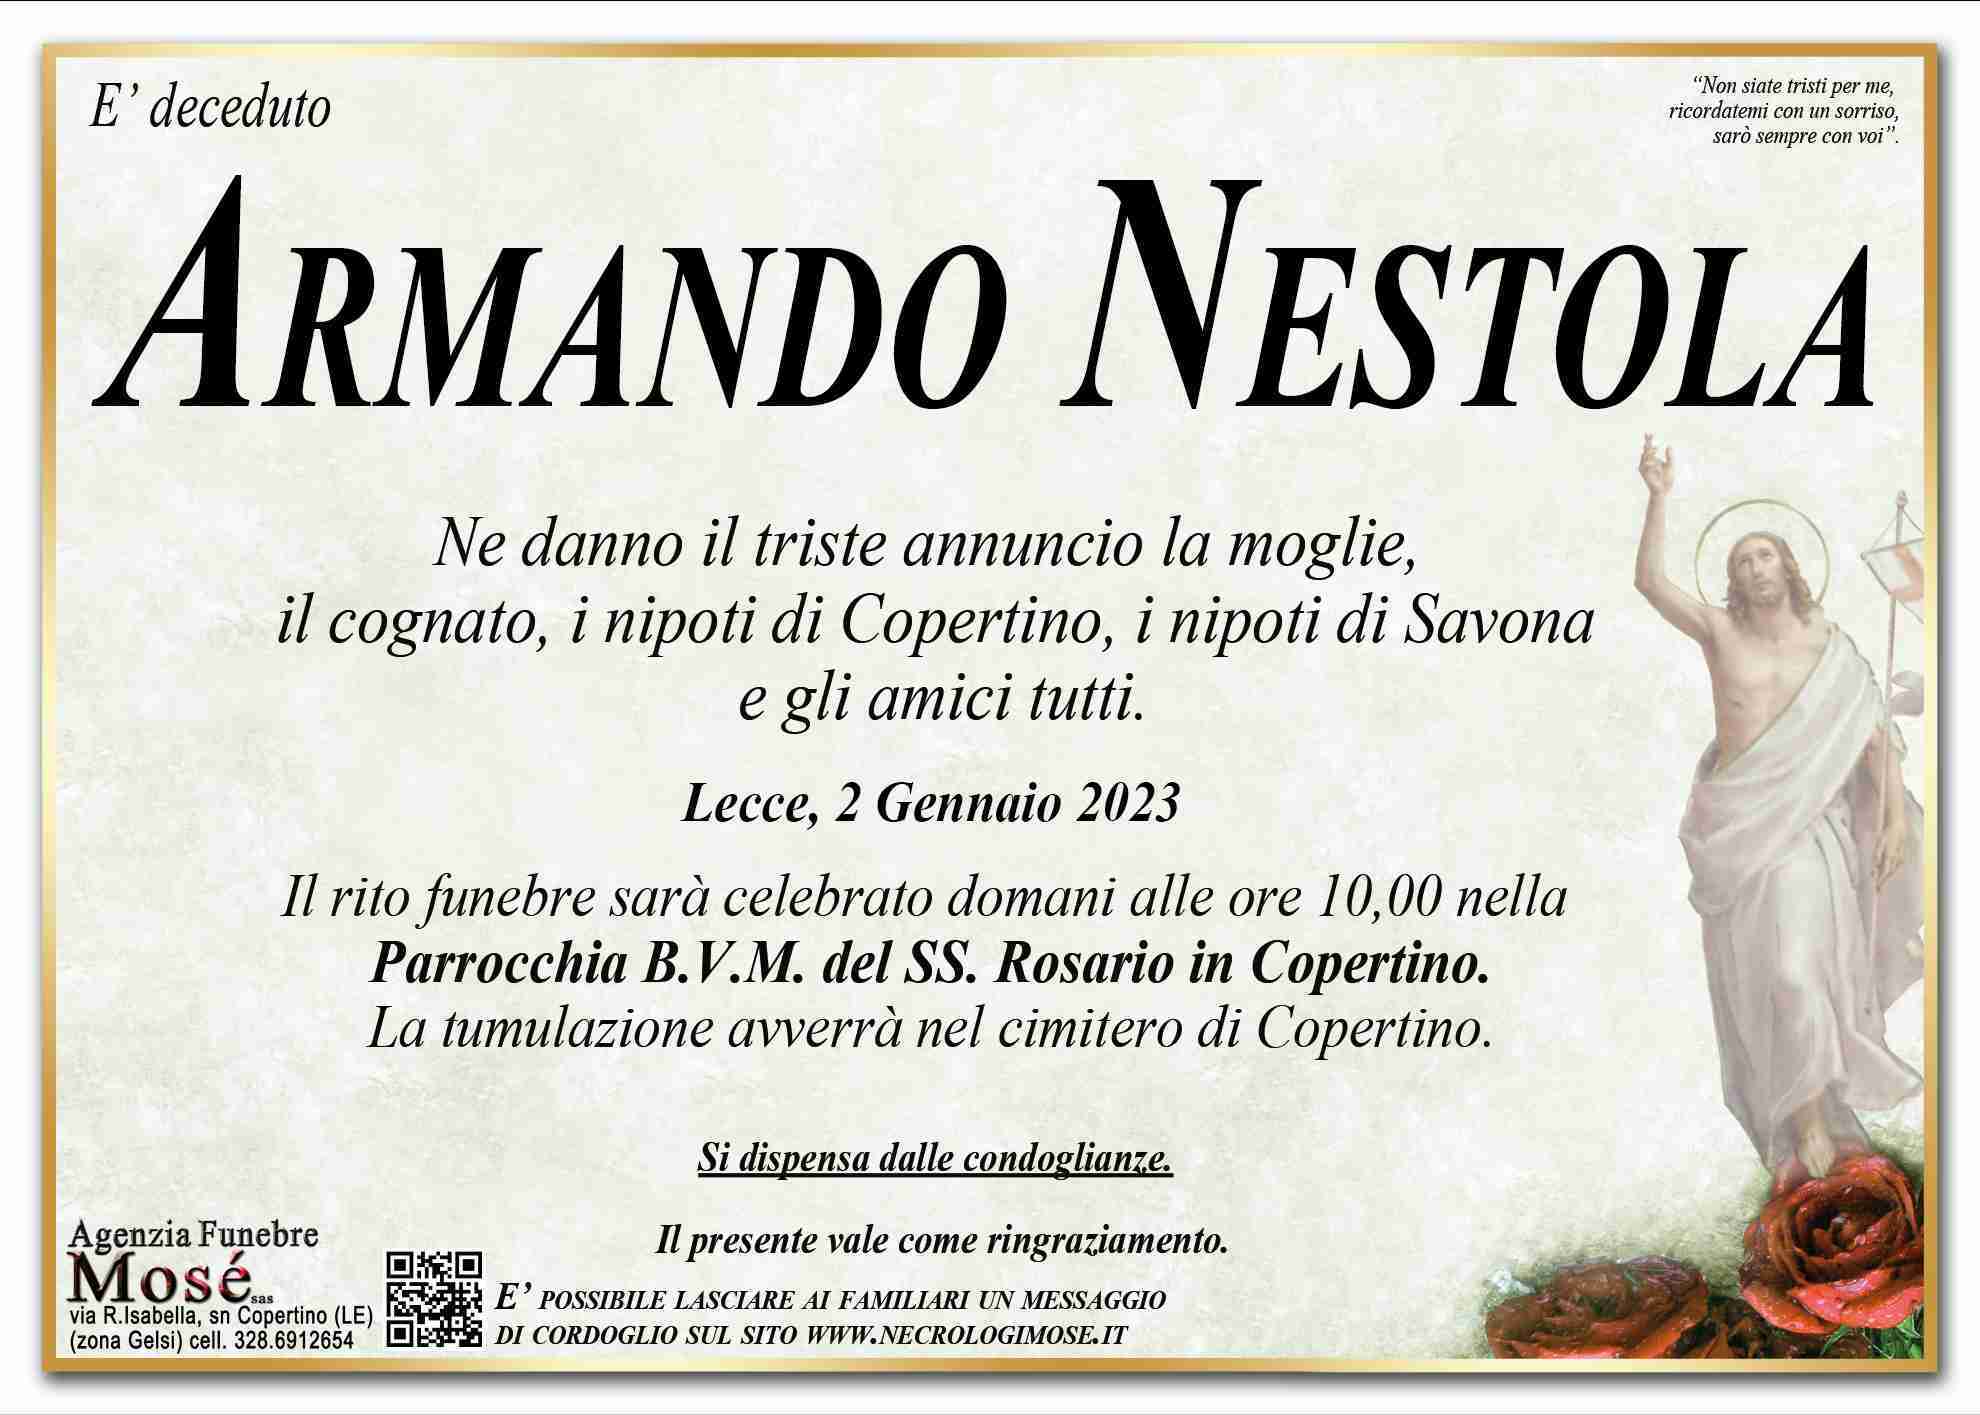 Armando Nestola